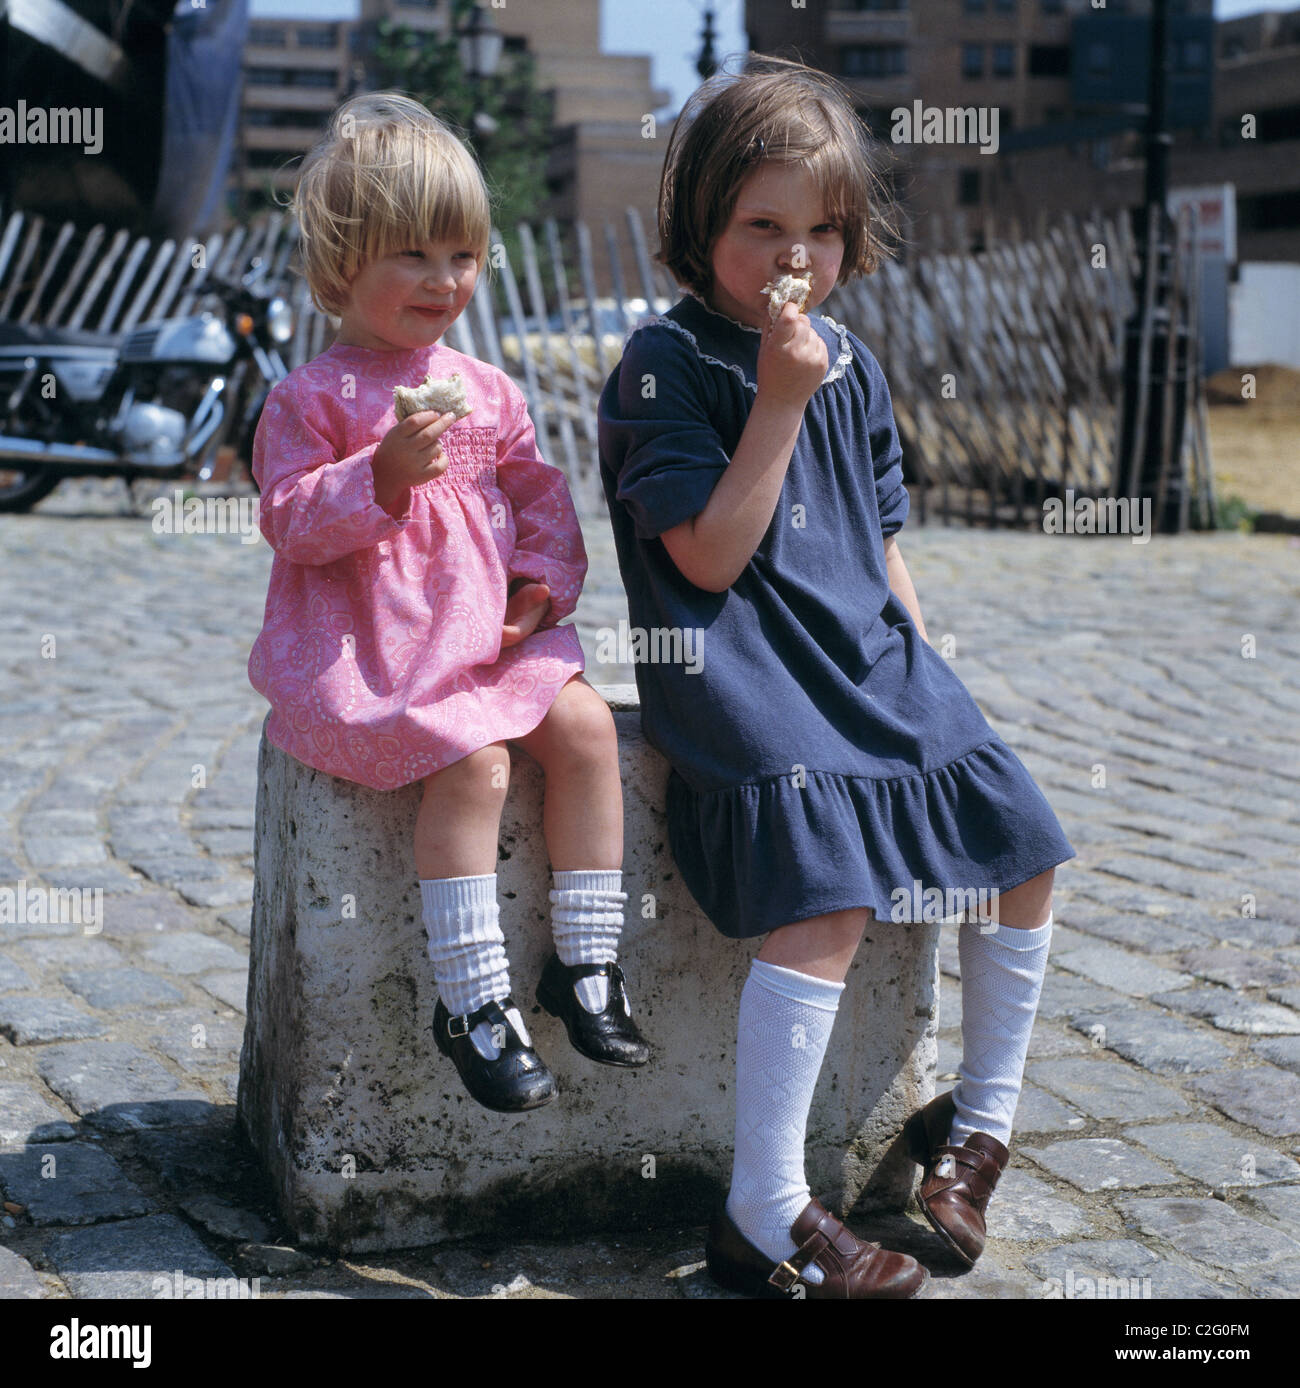 Années 70, les gens, les enfants, portrait, deux petites filles s'asseoir sur un poteau en train de manger un sandwich, âgés de 3 à 4 ans, de 5 à 8 ans, France, England, GB-LONDON Banque D'Images